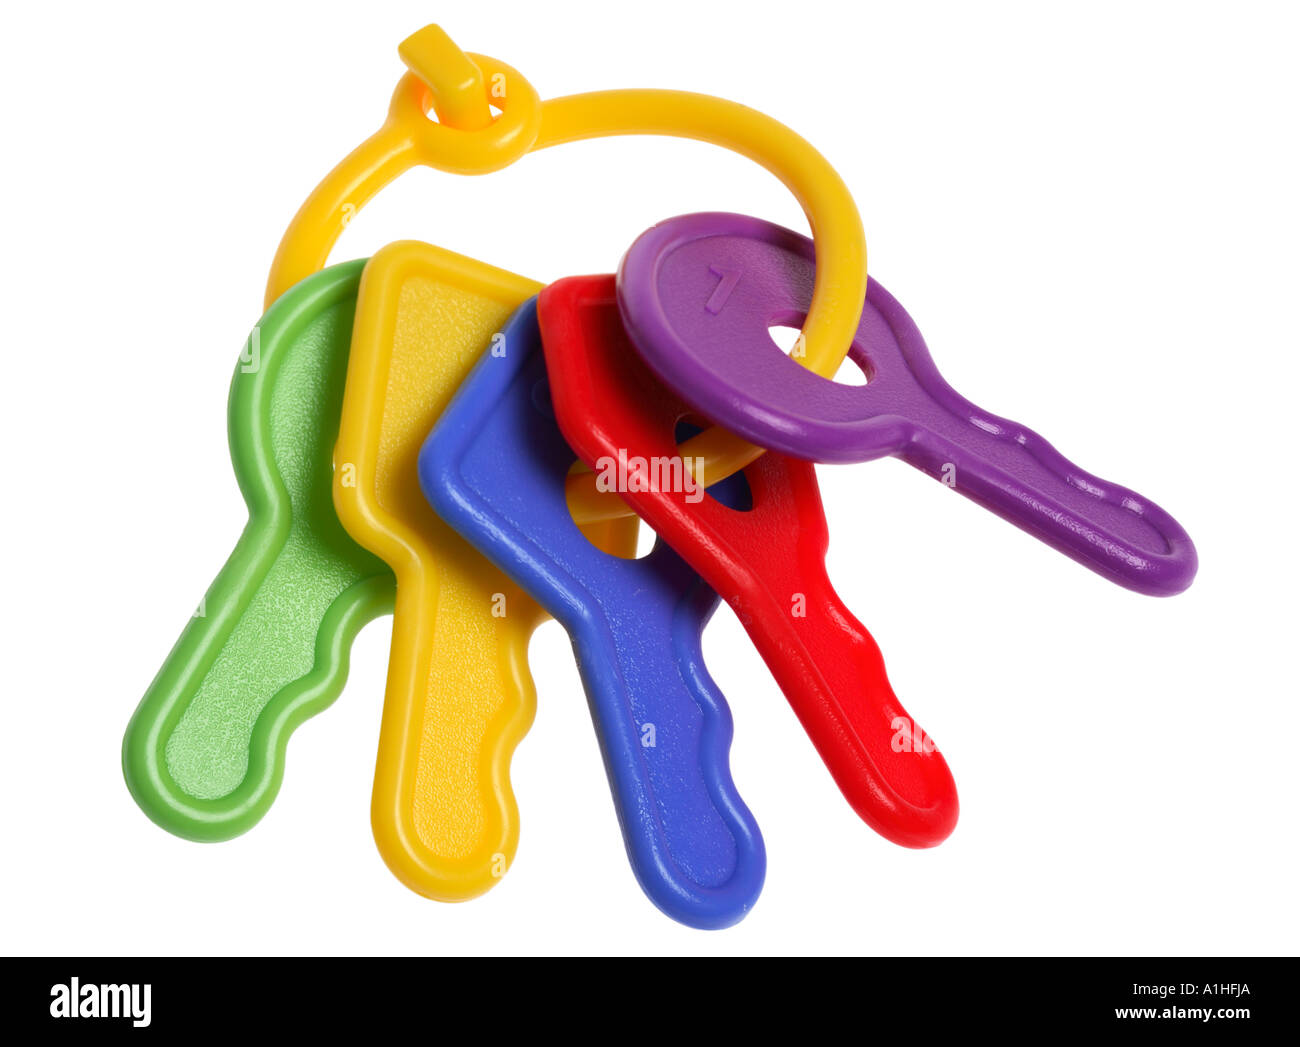 Plastic toy keys Stock Photo